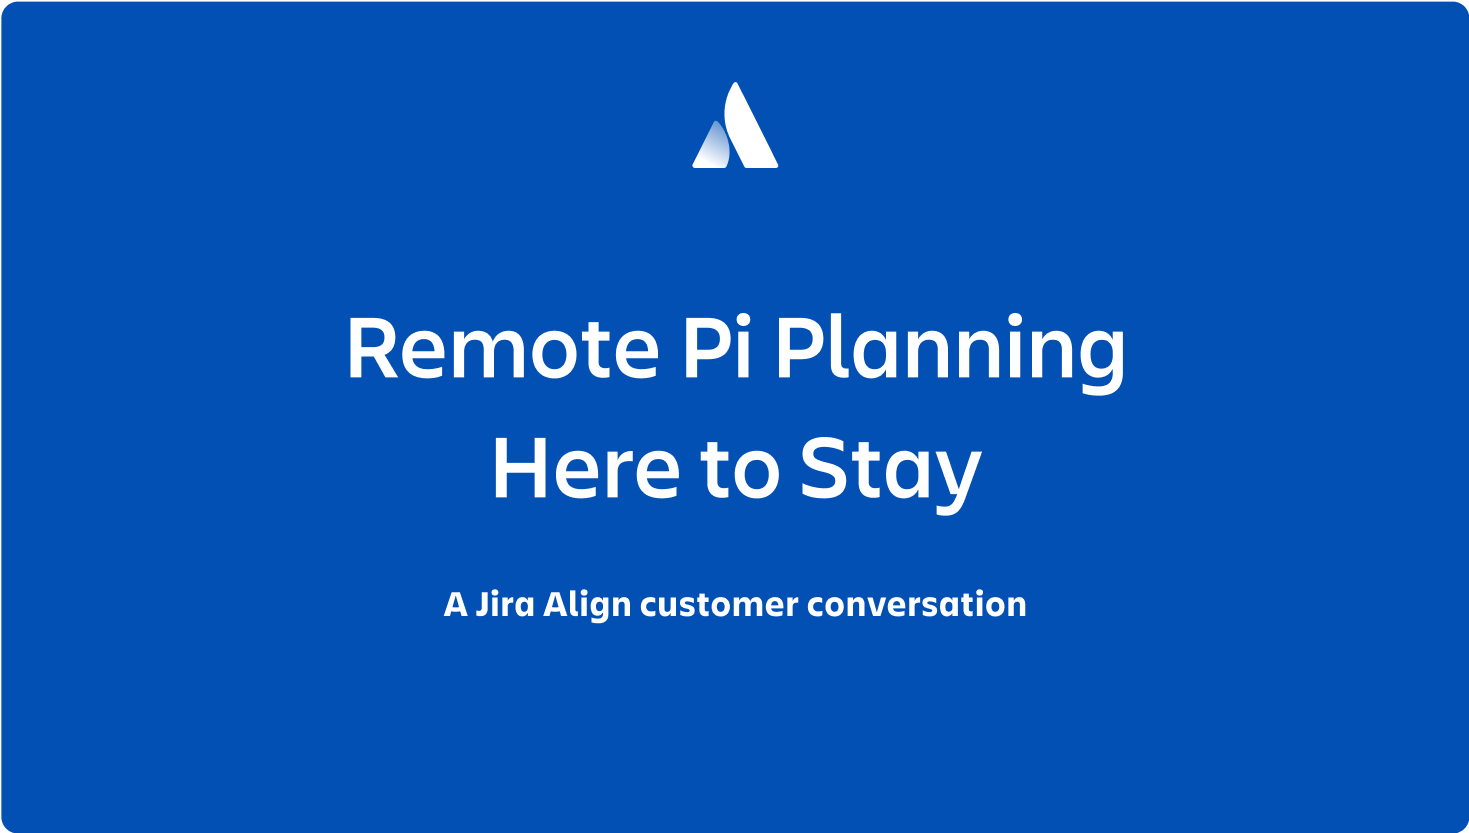 Imagen en miniatura del seminario web "Remote PI Planning is here to stay" (La planificación de PI remota ha llegado para quedarse)